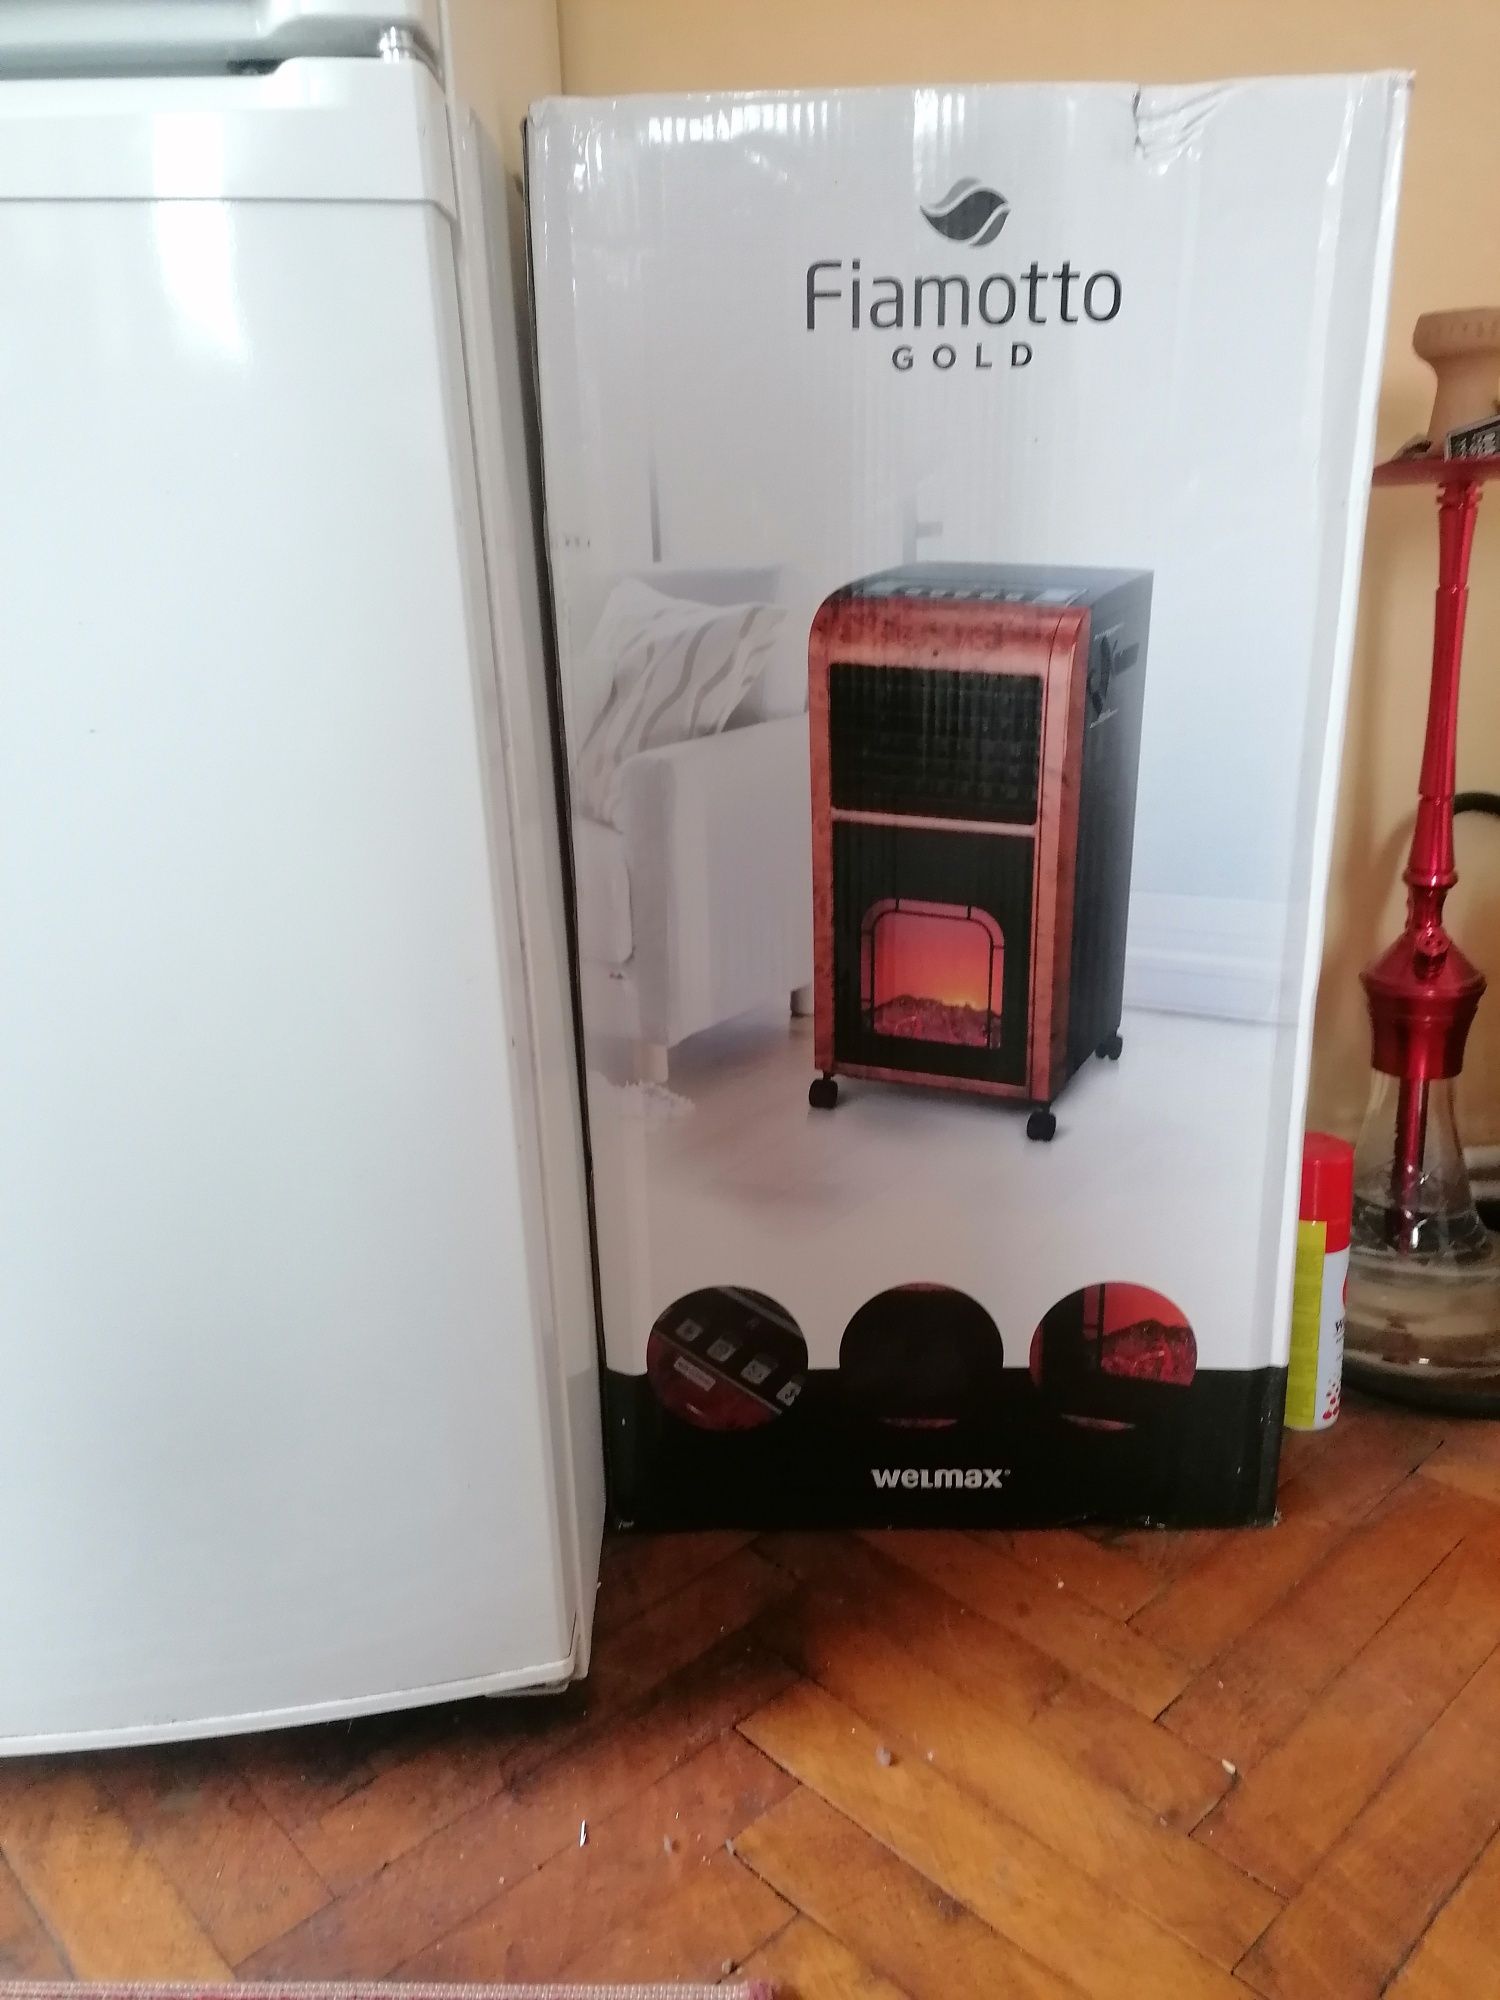 Продава се нова преносима камина климатик Fiamotto- Gold Welmax
Fiamot